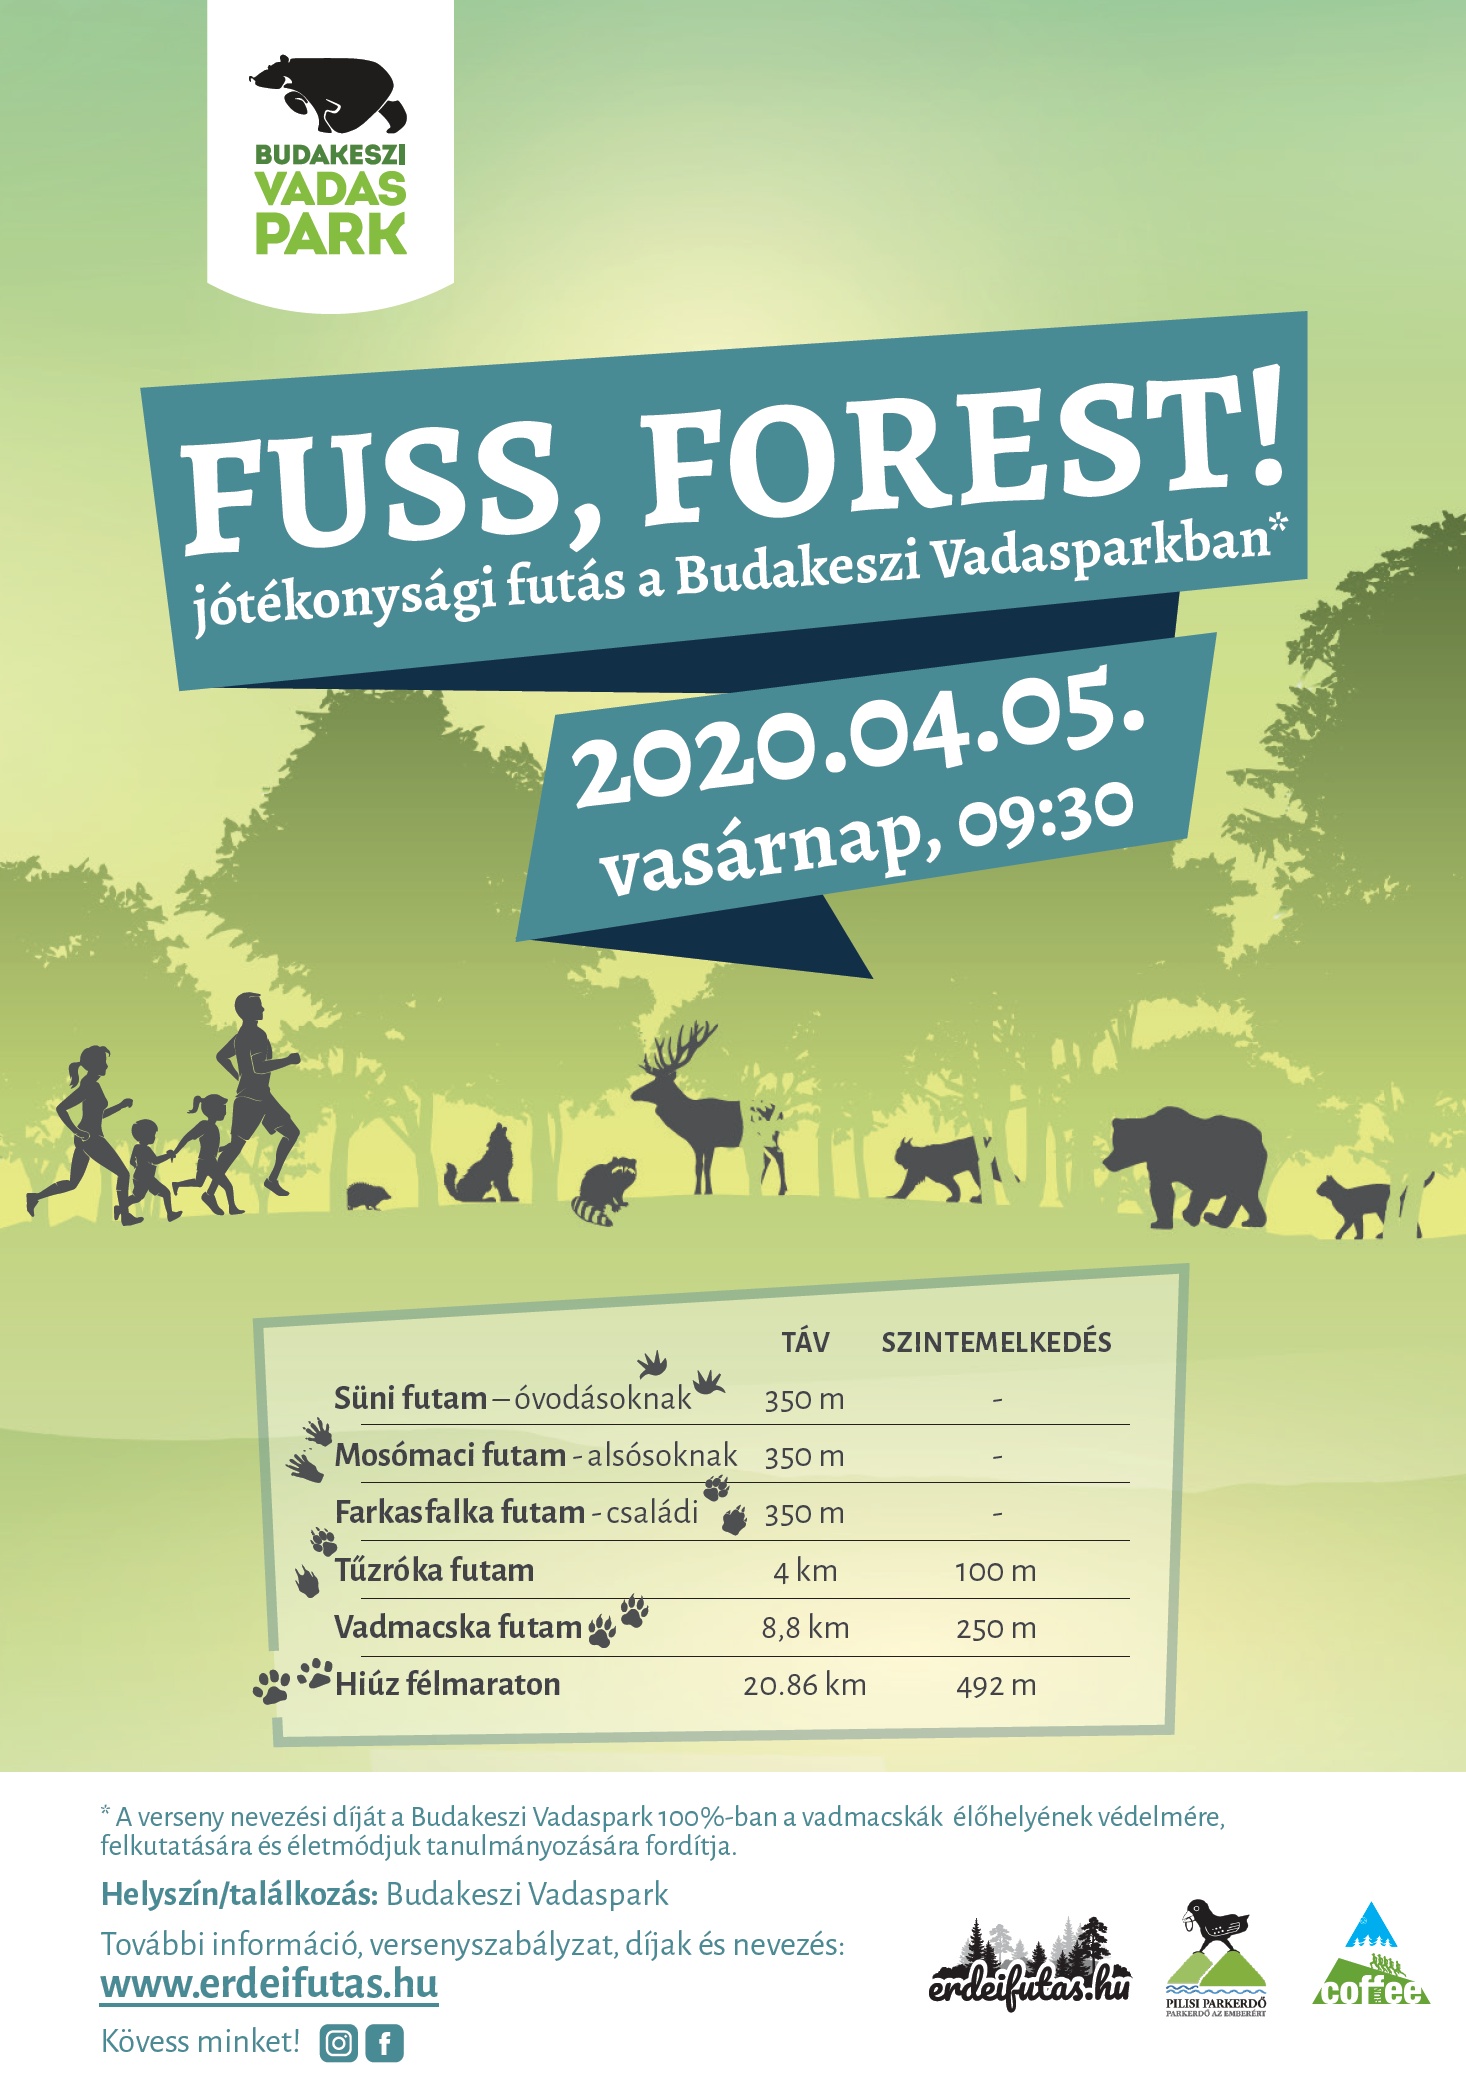 Fuss Forest! - Jótékonysági futóverseny a Budakeszi Vadasparkban 